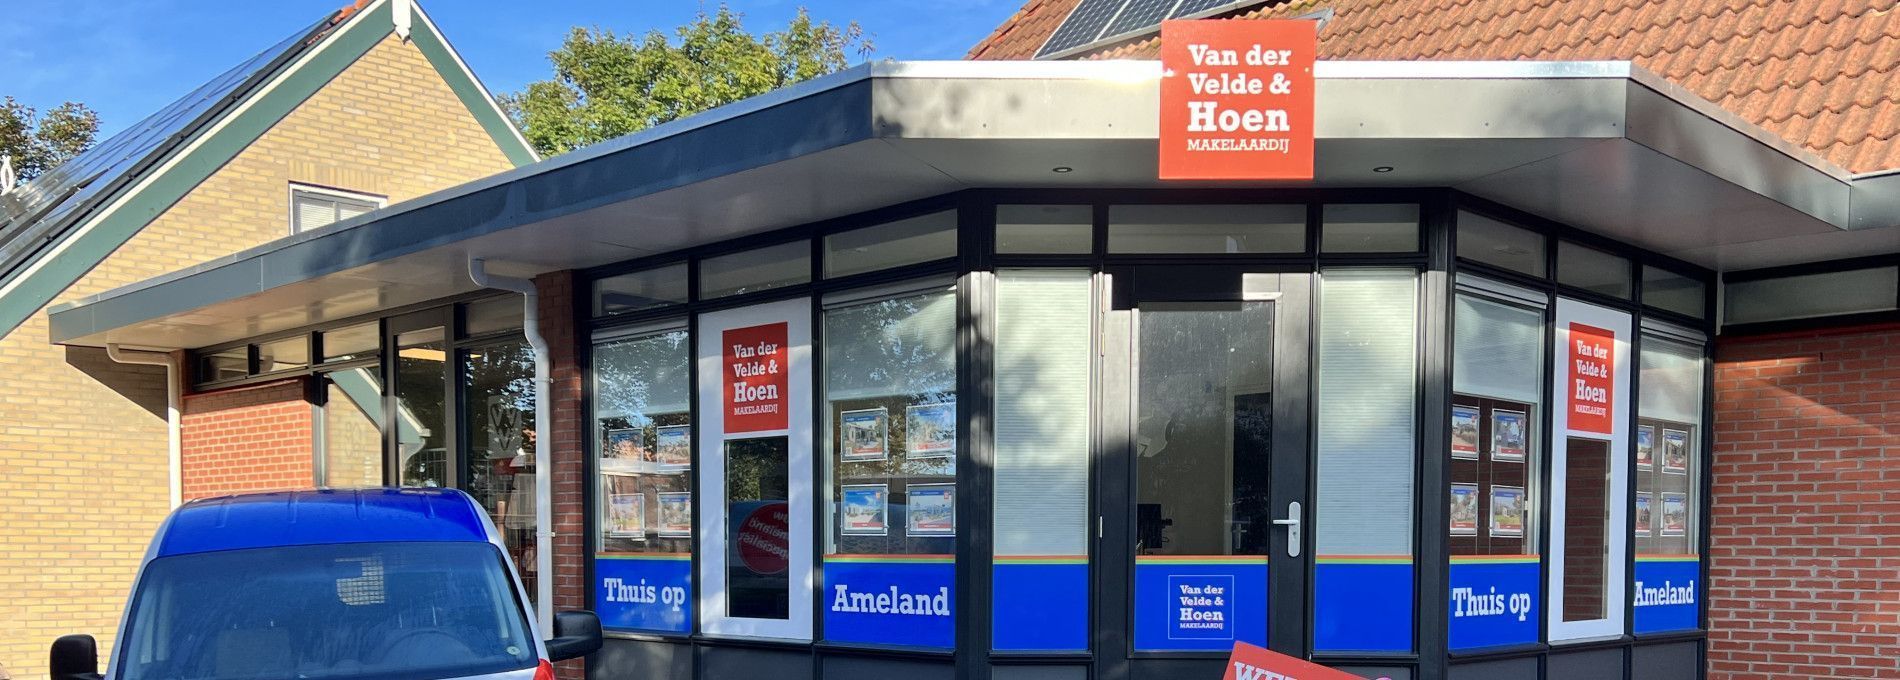 Van der Velde & Hoen Makelaardij - VVV Ameland